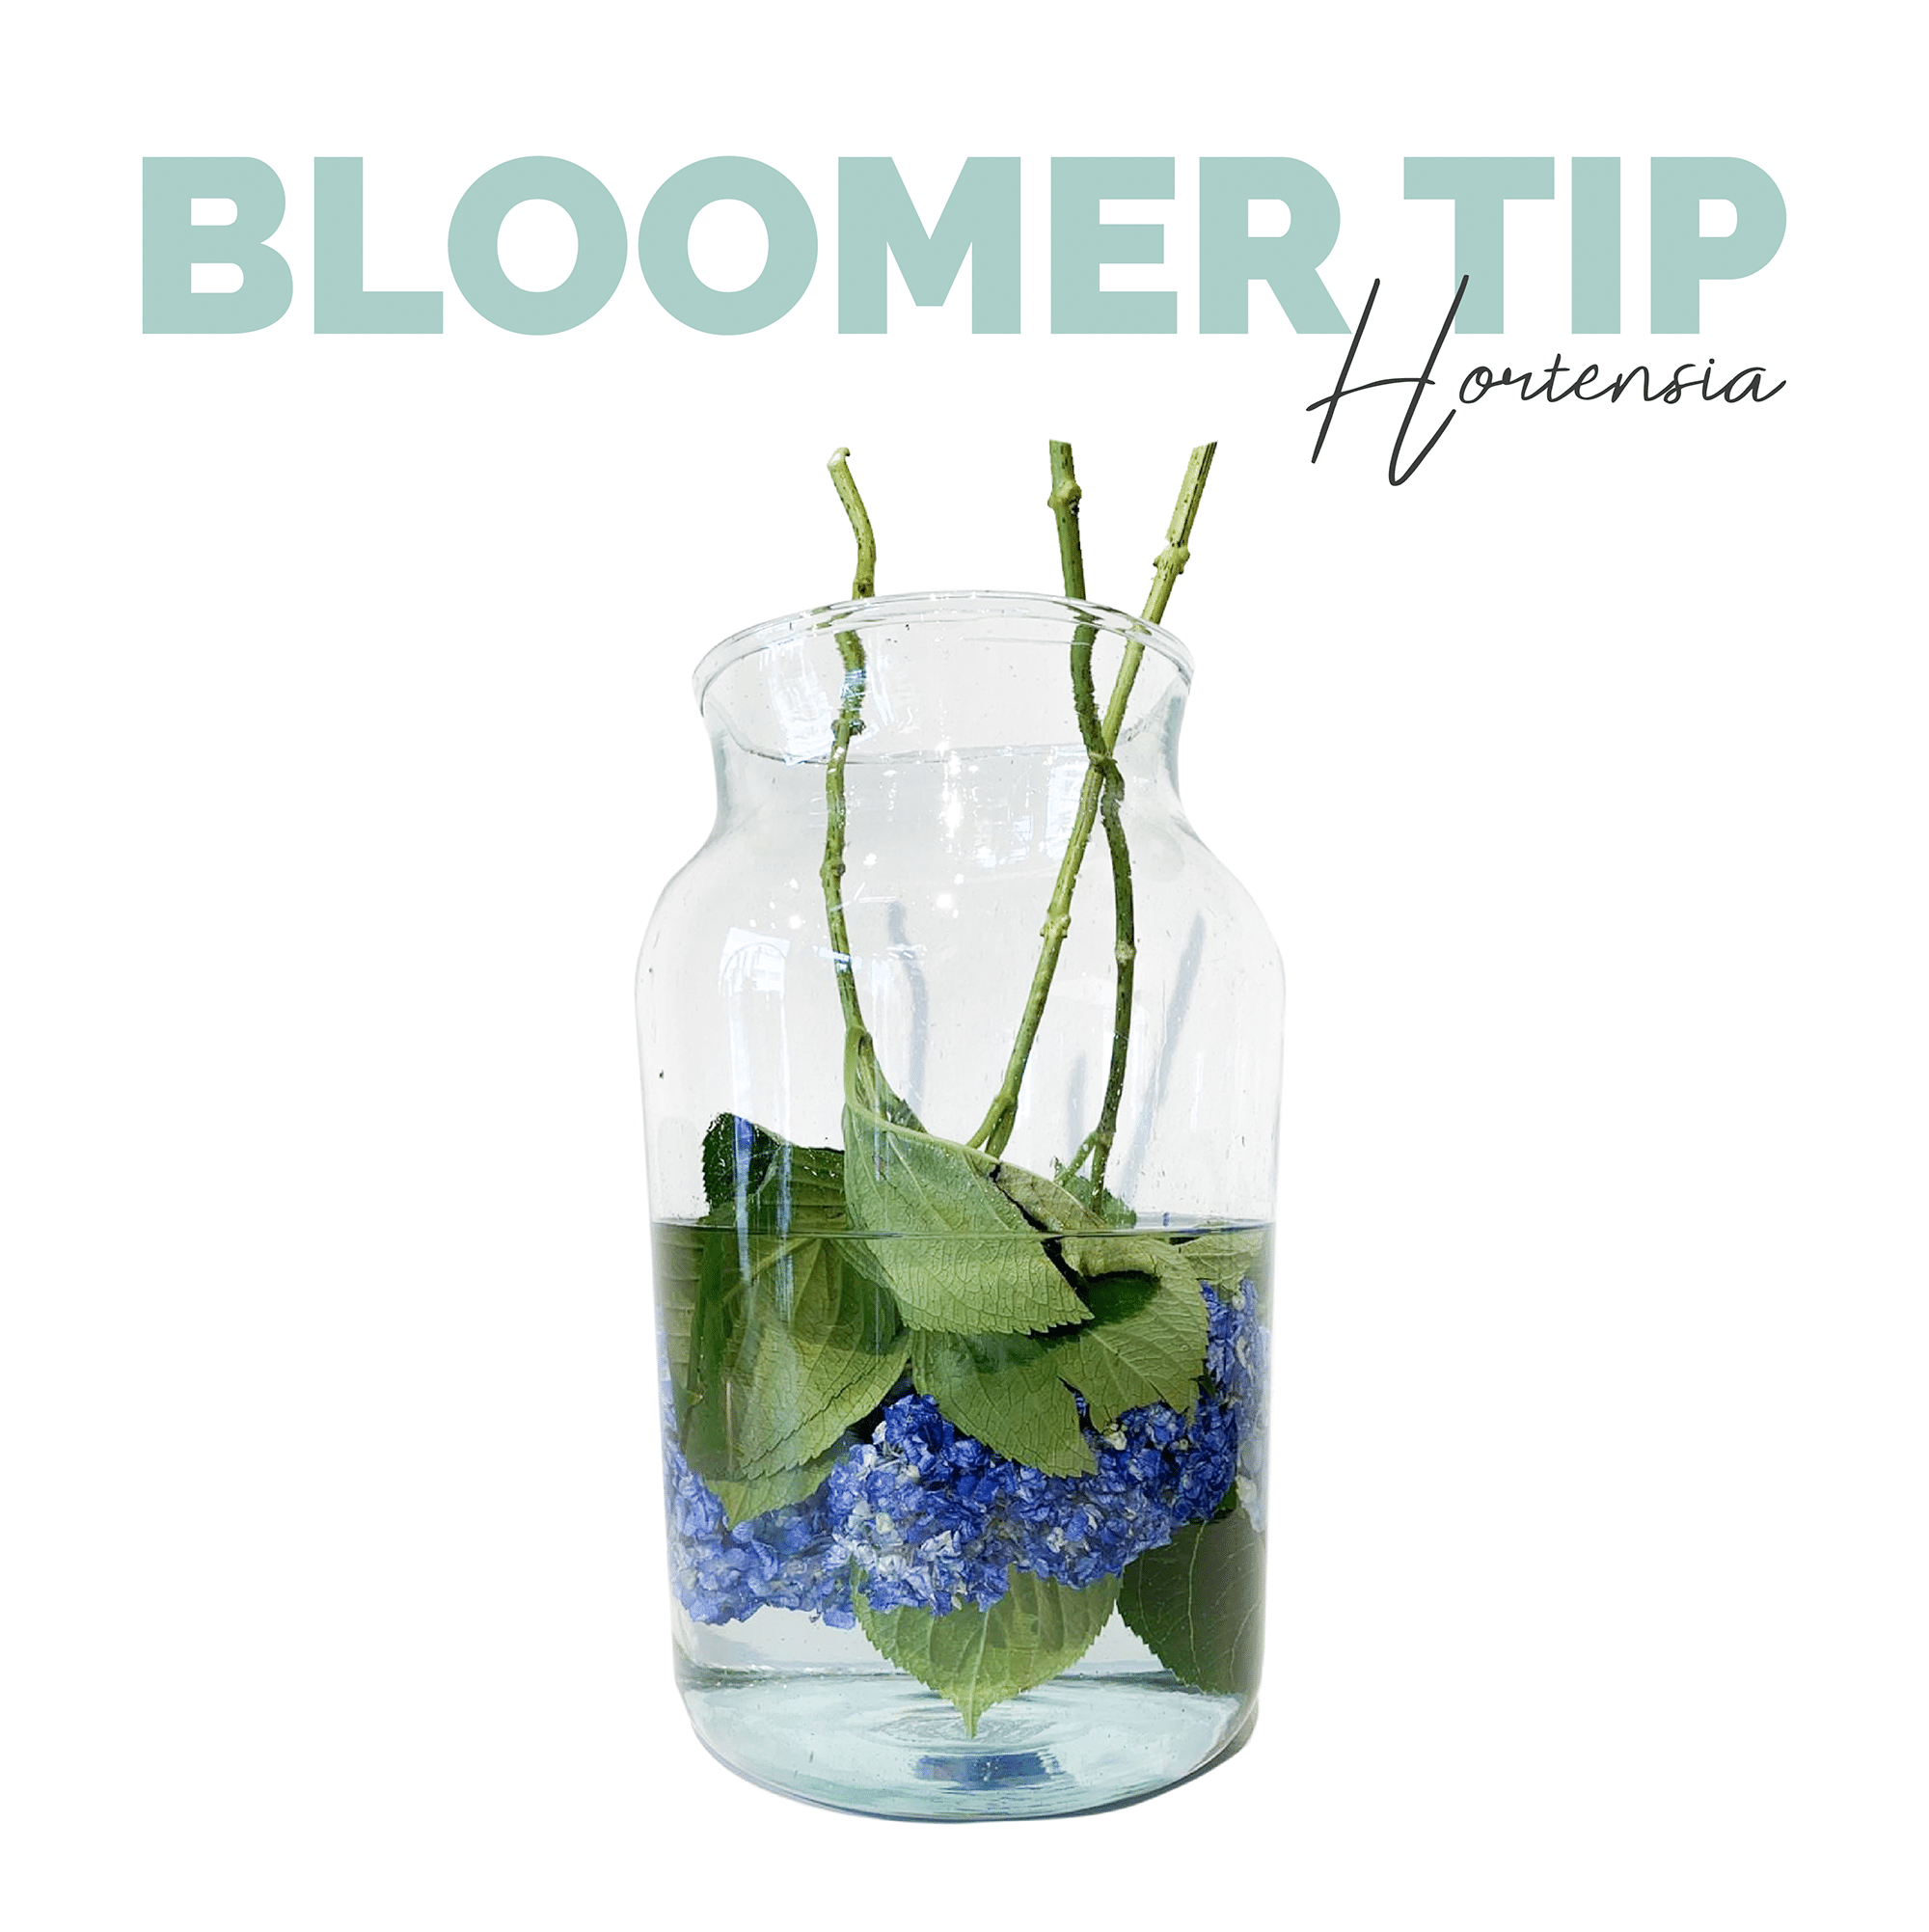 Bloomer tip Hortensia